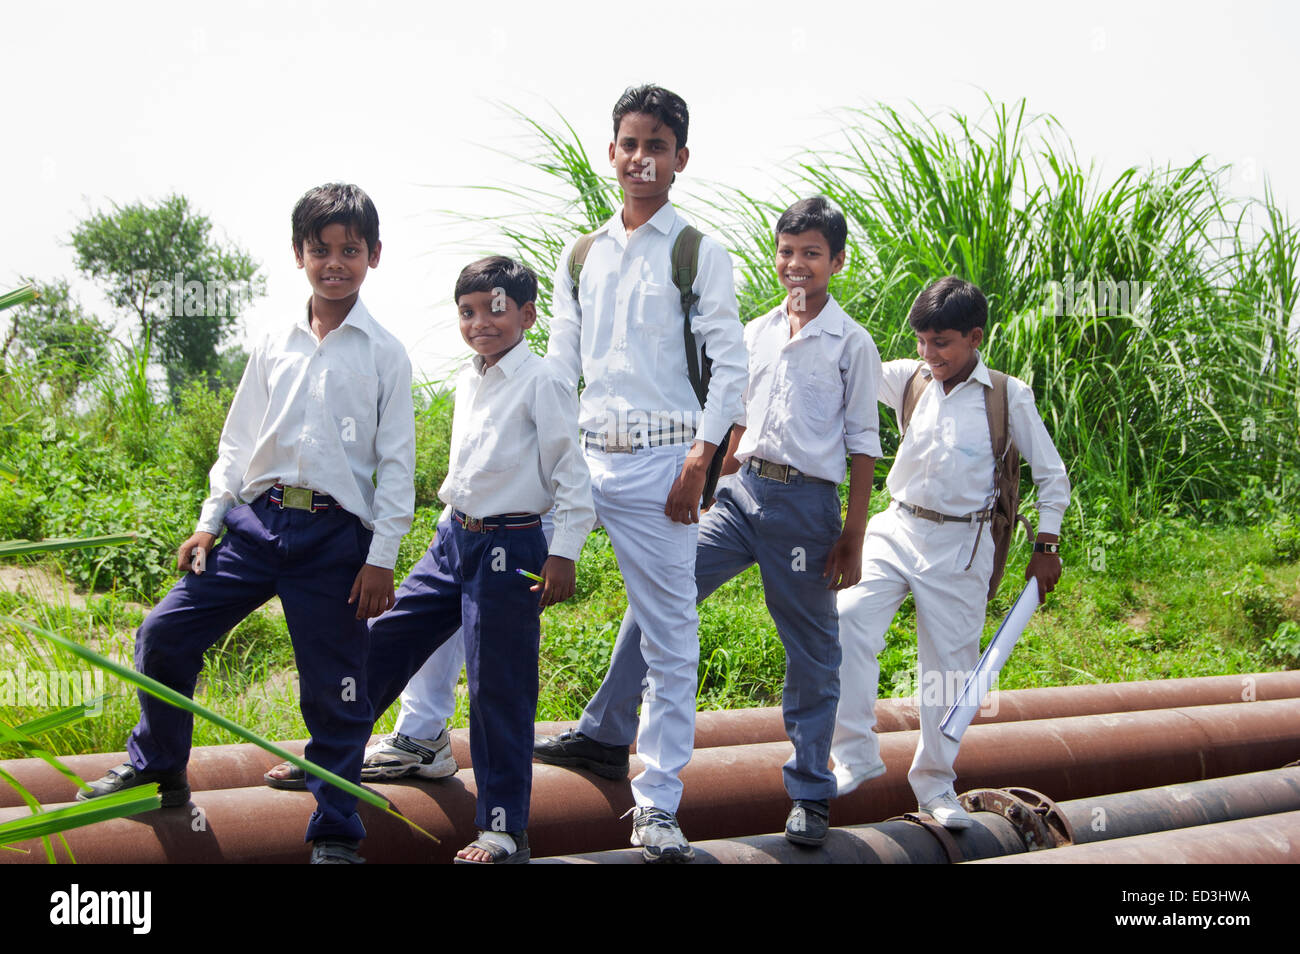 Los niños estudiantes de la escuela rural indio diversión Foto de stock